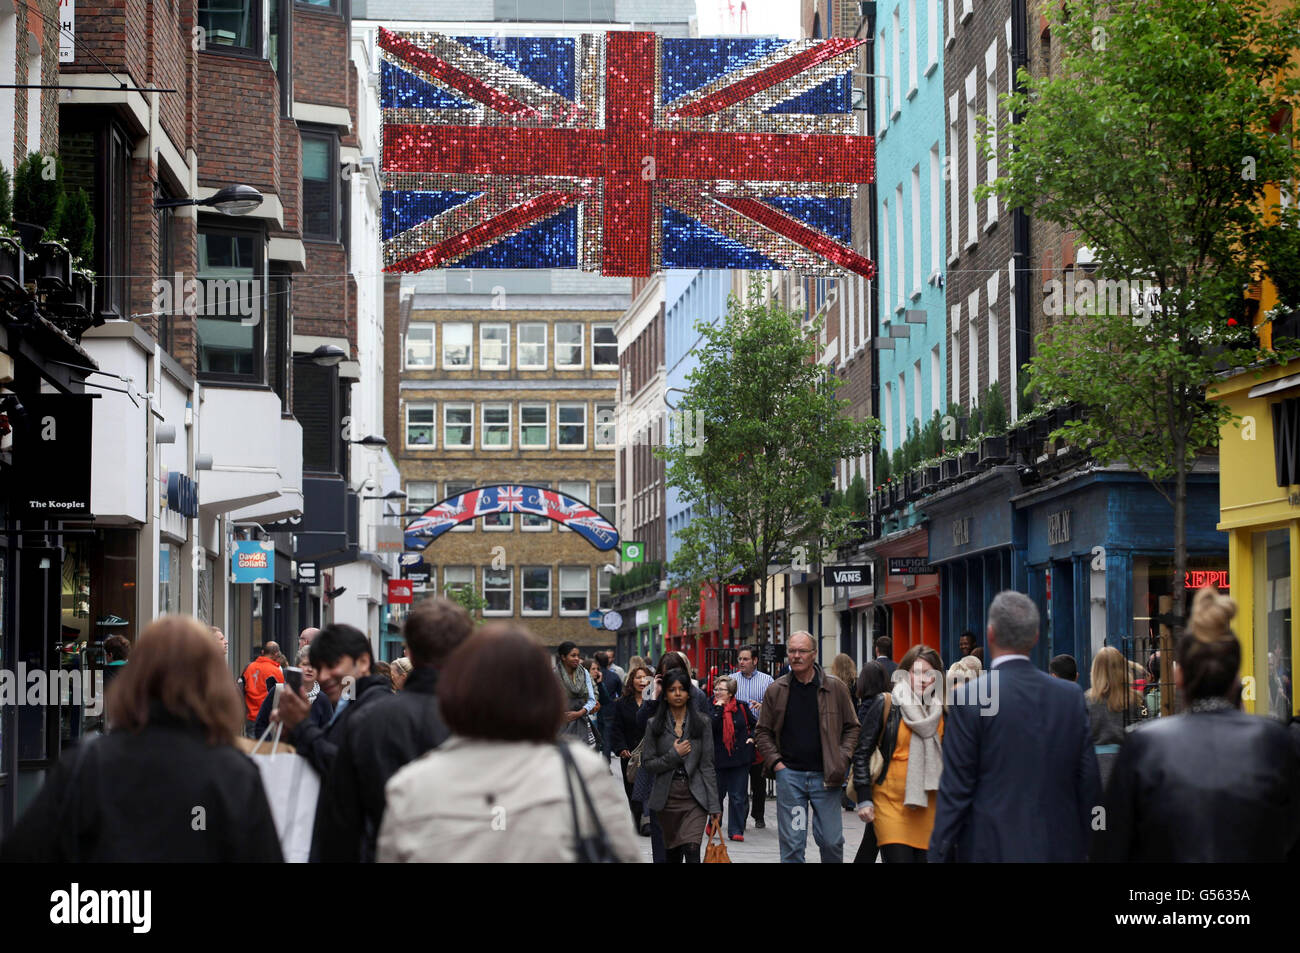 Über der Carnaby Street im Zentrum Londons hängt eine dekonstruierte, dreidimensionale Unionsflagge, die mit tausenden metallischen roten, weißen und blauen Schimmer-Scheiben bedeckt ist, als Teil der überdimensionalen öffentlichen Kunstinstallationen für das Diamond Jubilee. Stockfoto